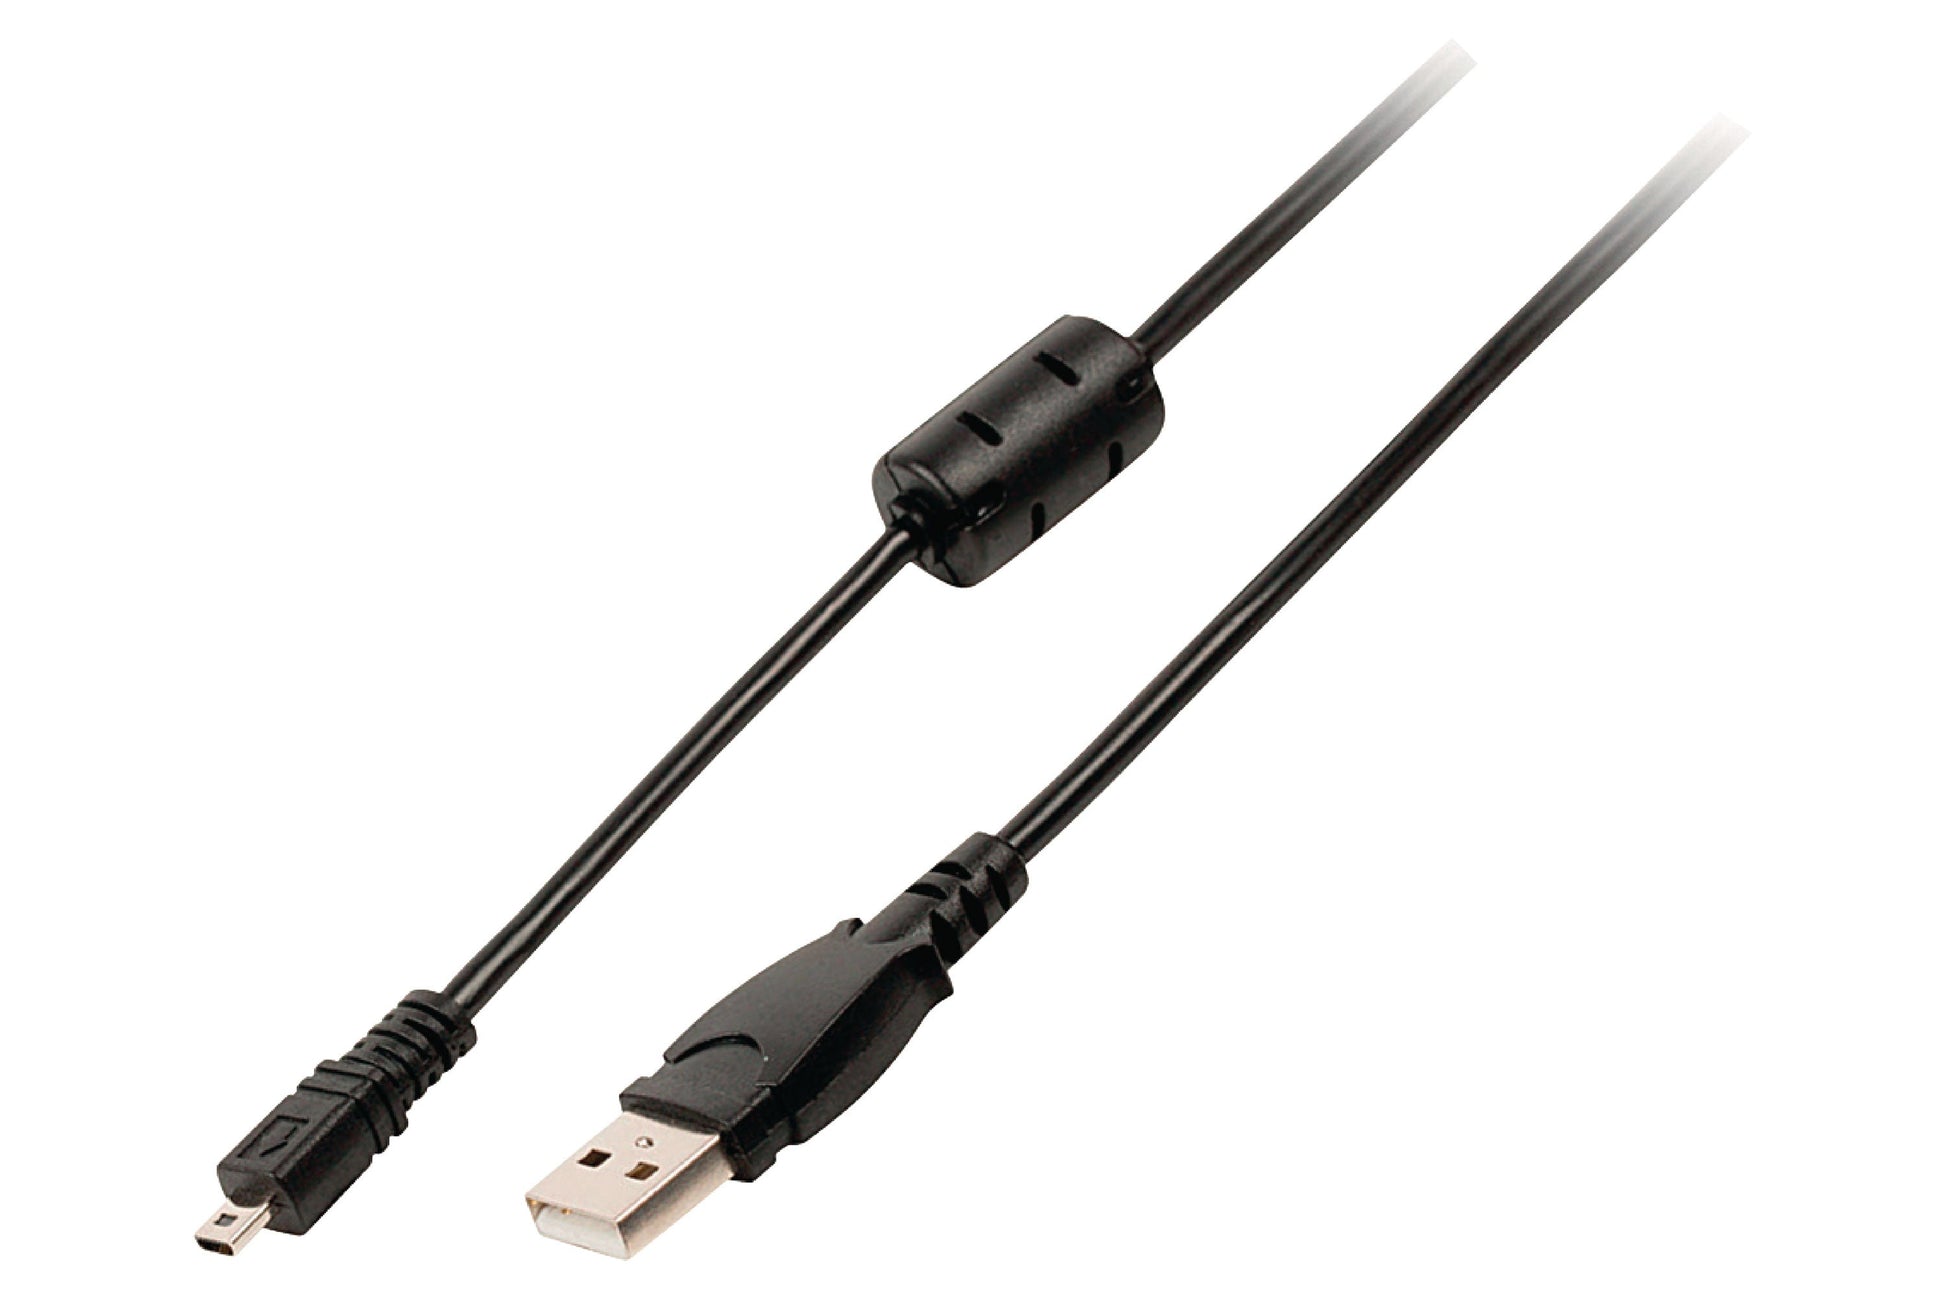 Valueline Camera Data Cable USB 2.0 A Male - 14p Fuji Connector Male 2m - maplin.co.uk